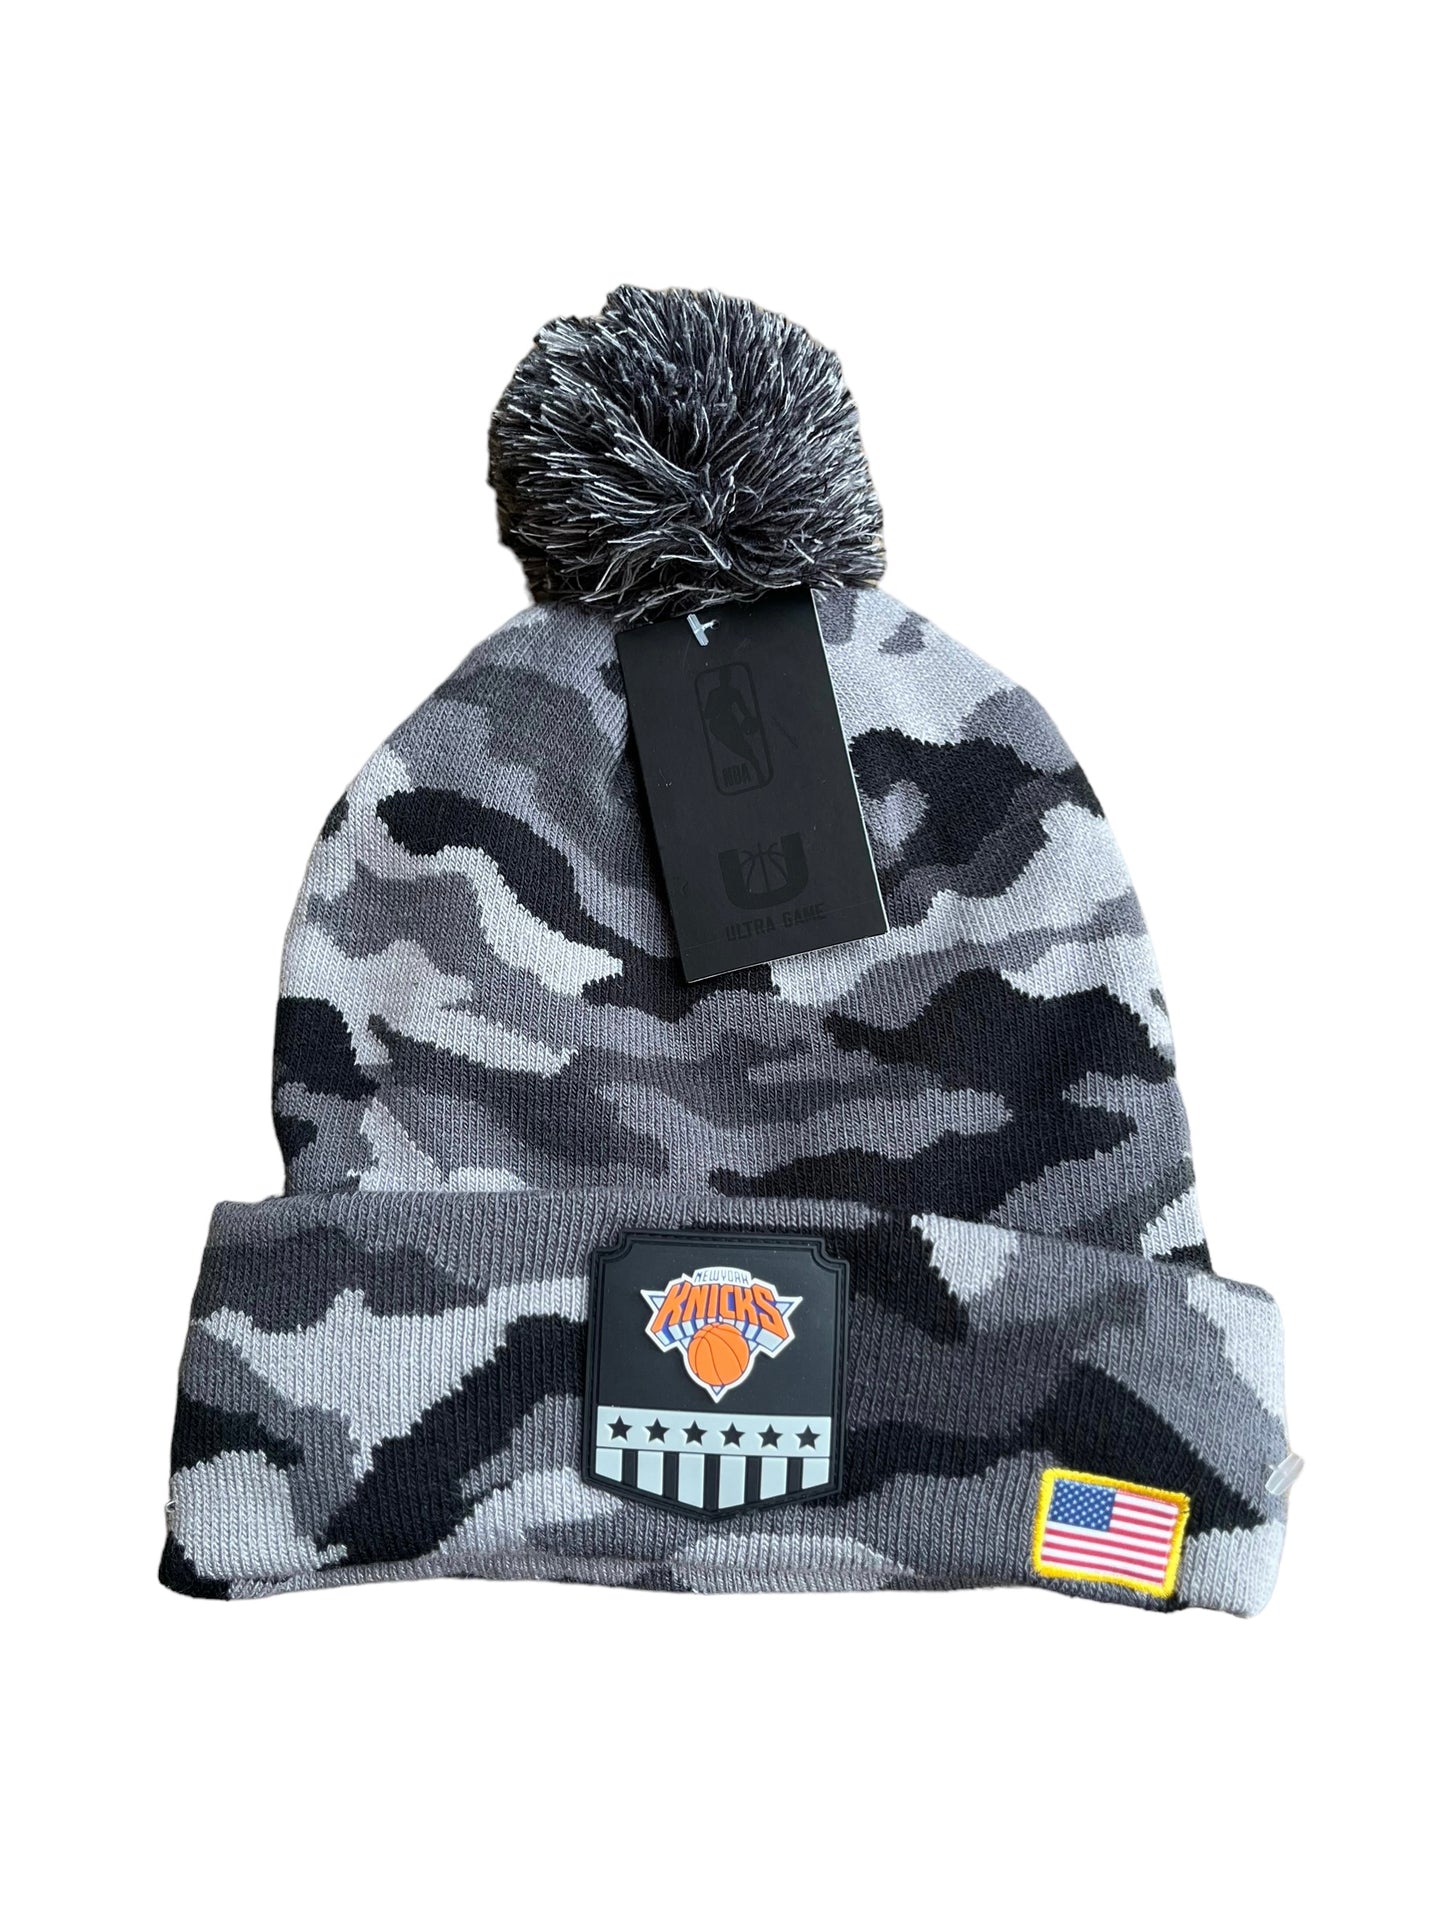 NWT NY Knicks Hat